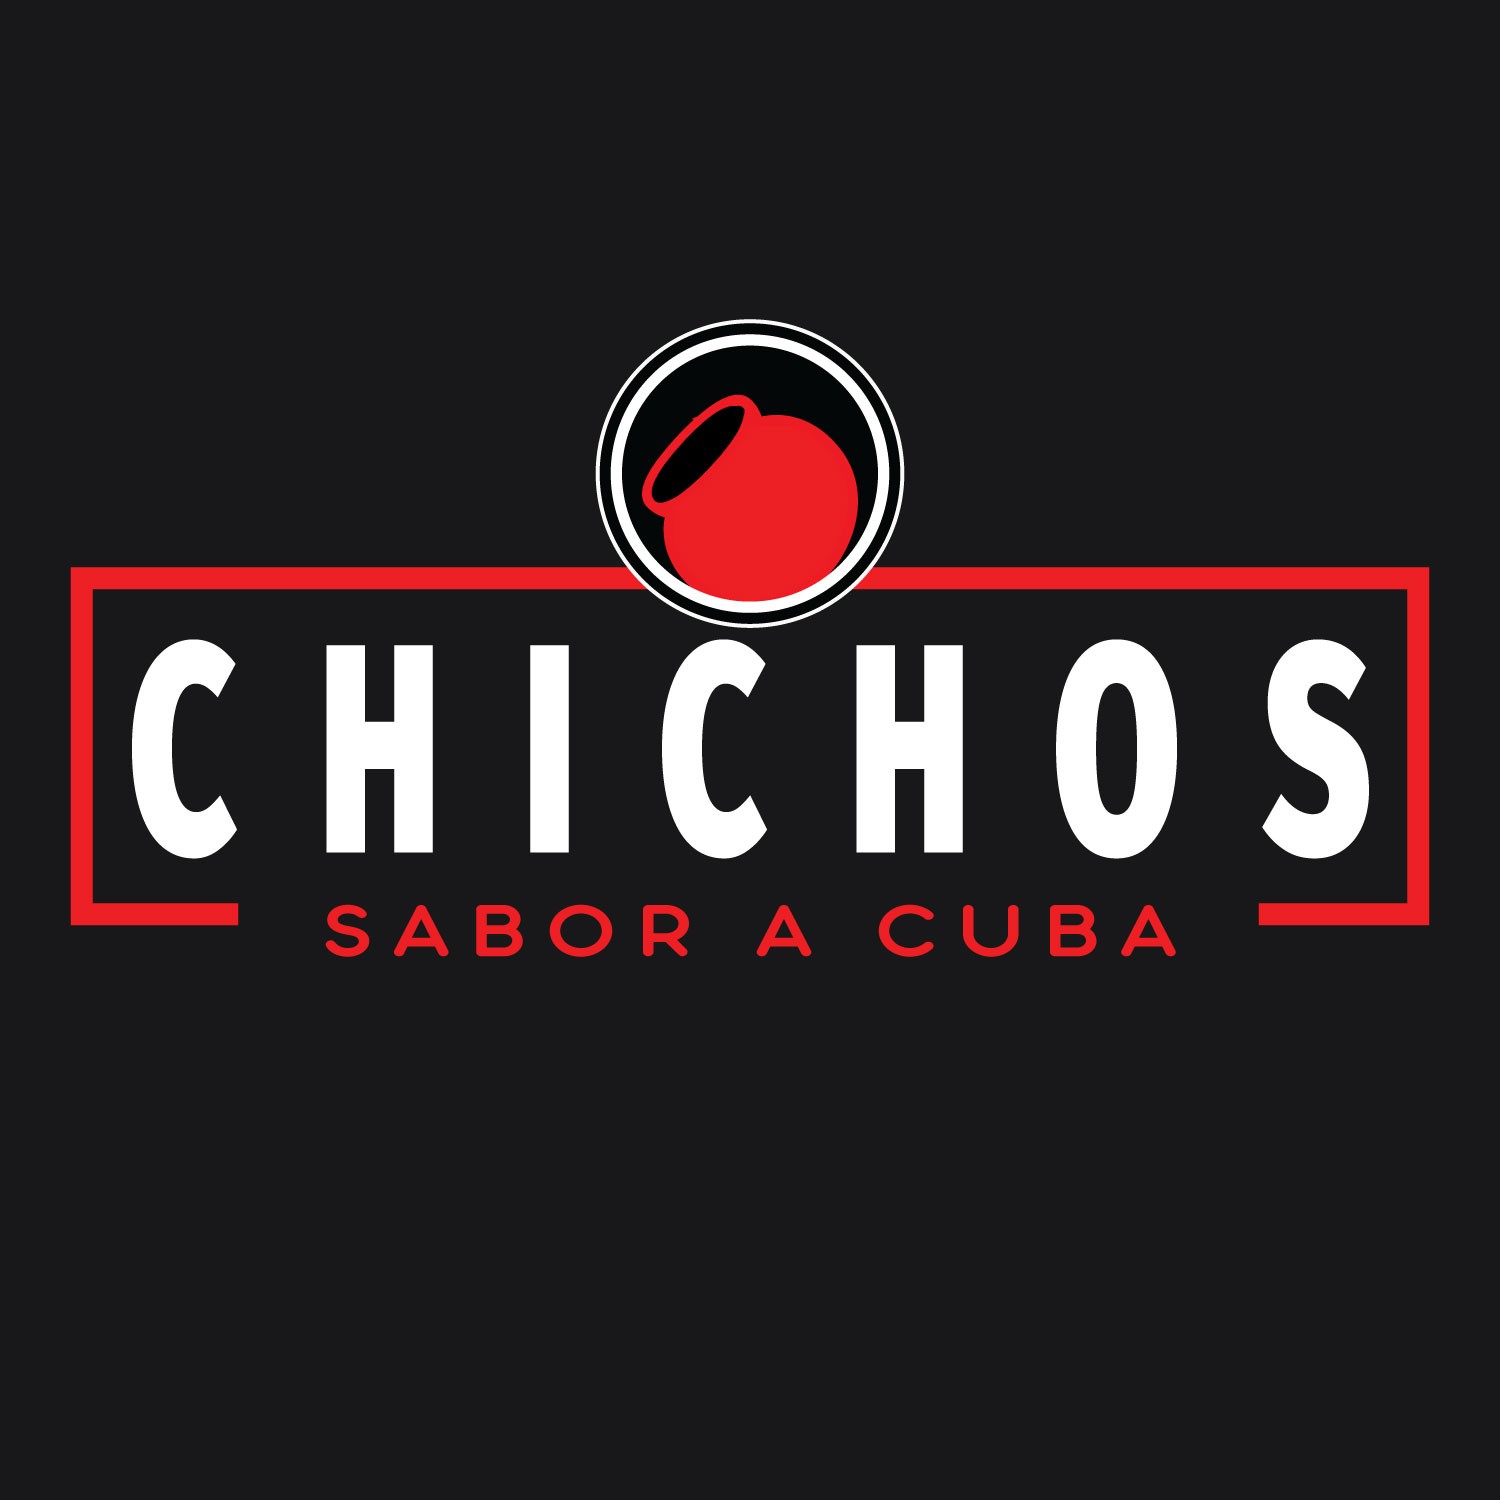 Chichos Sabor a Cuba